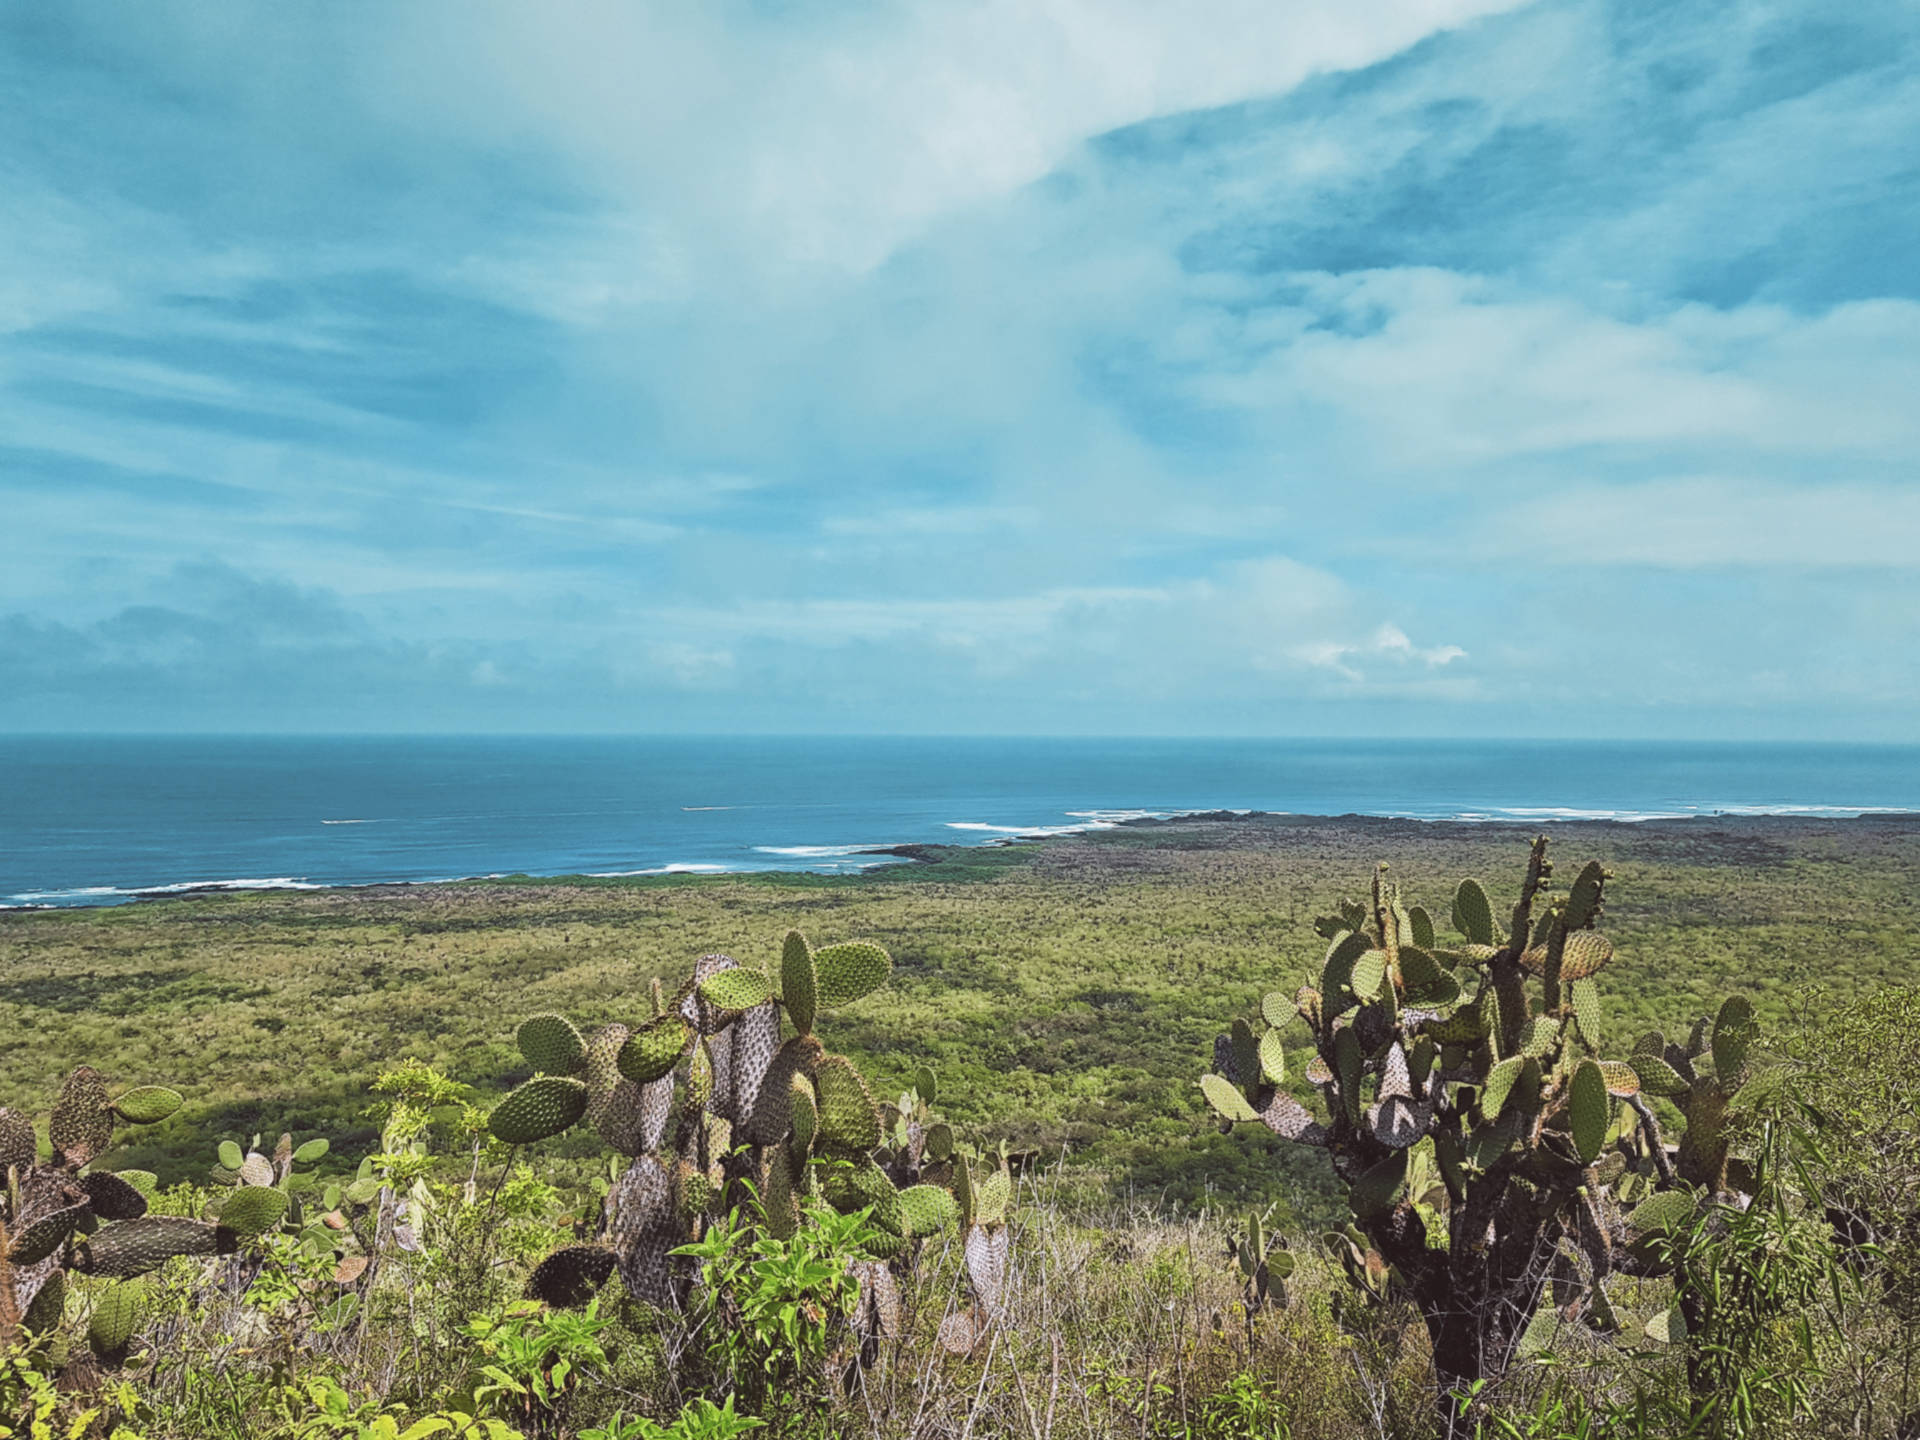 Jak tanio zwiedzić Wyspy Galapagos Darmowe atrakcje na wyspach (10)